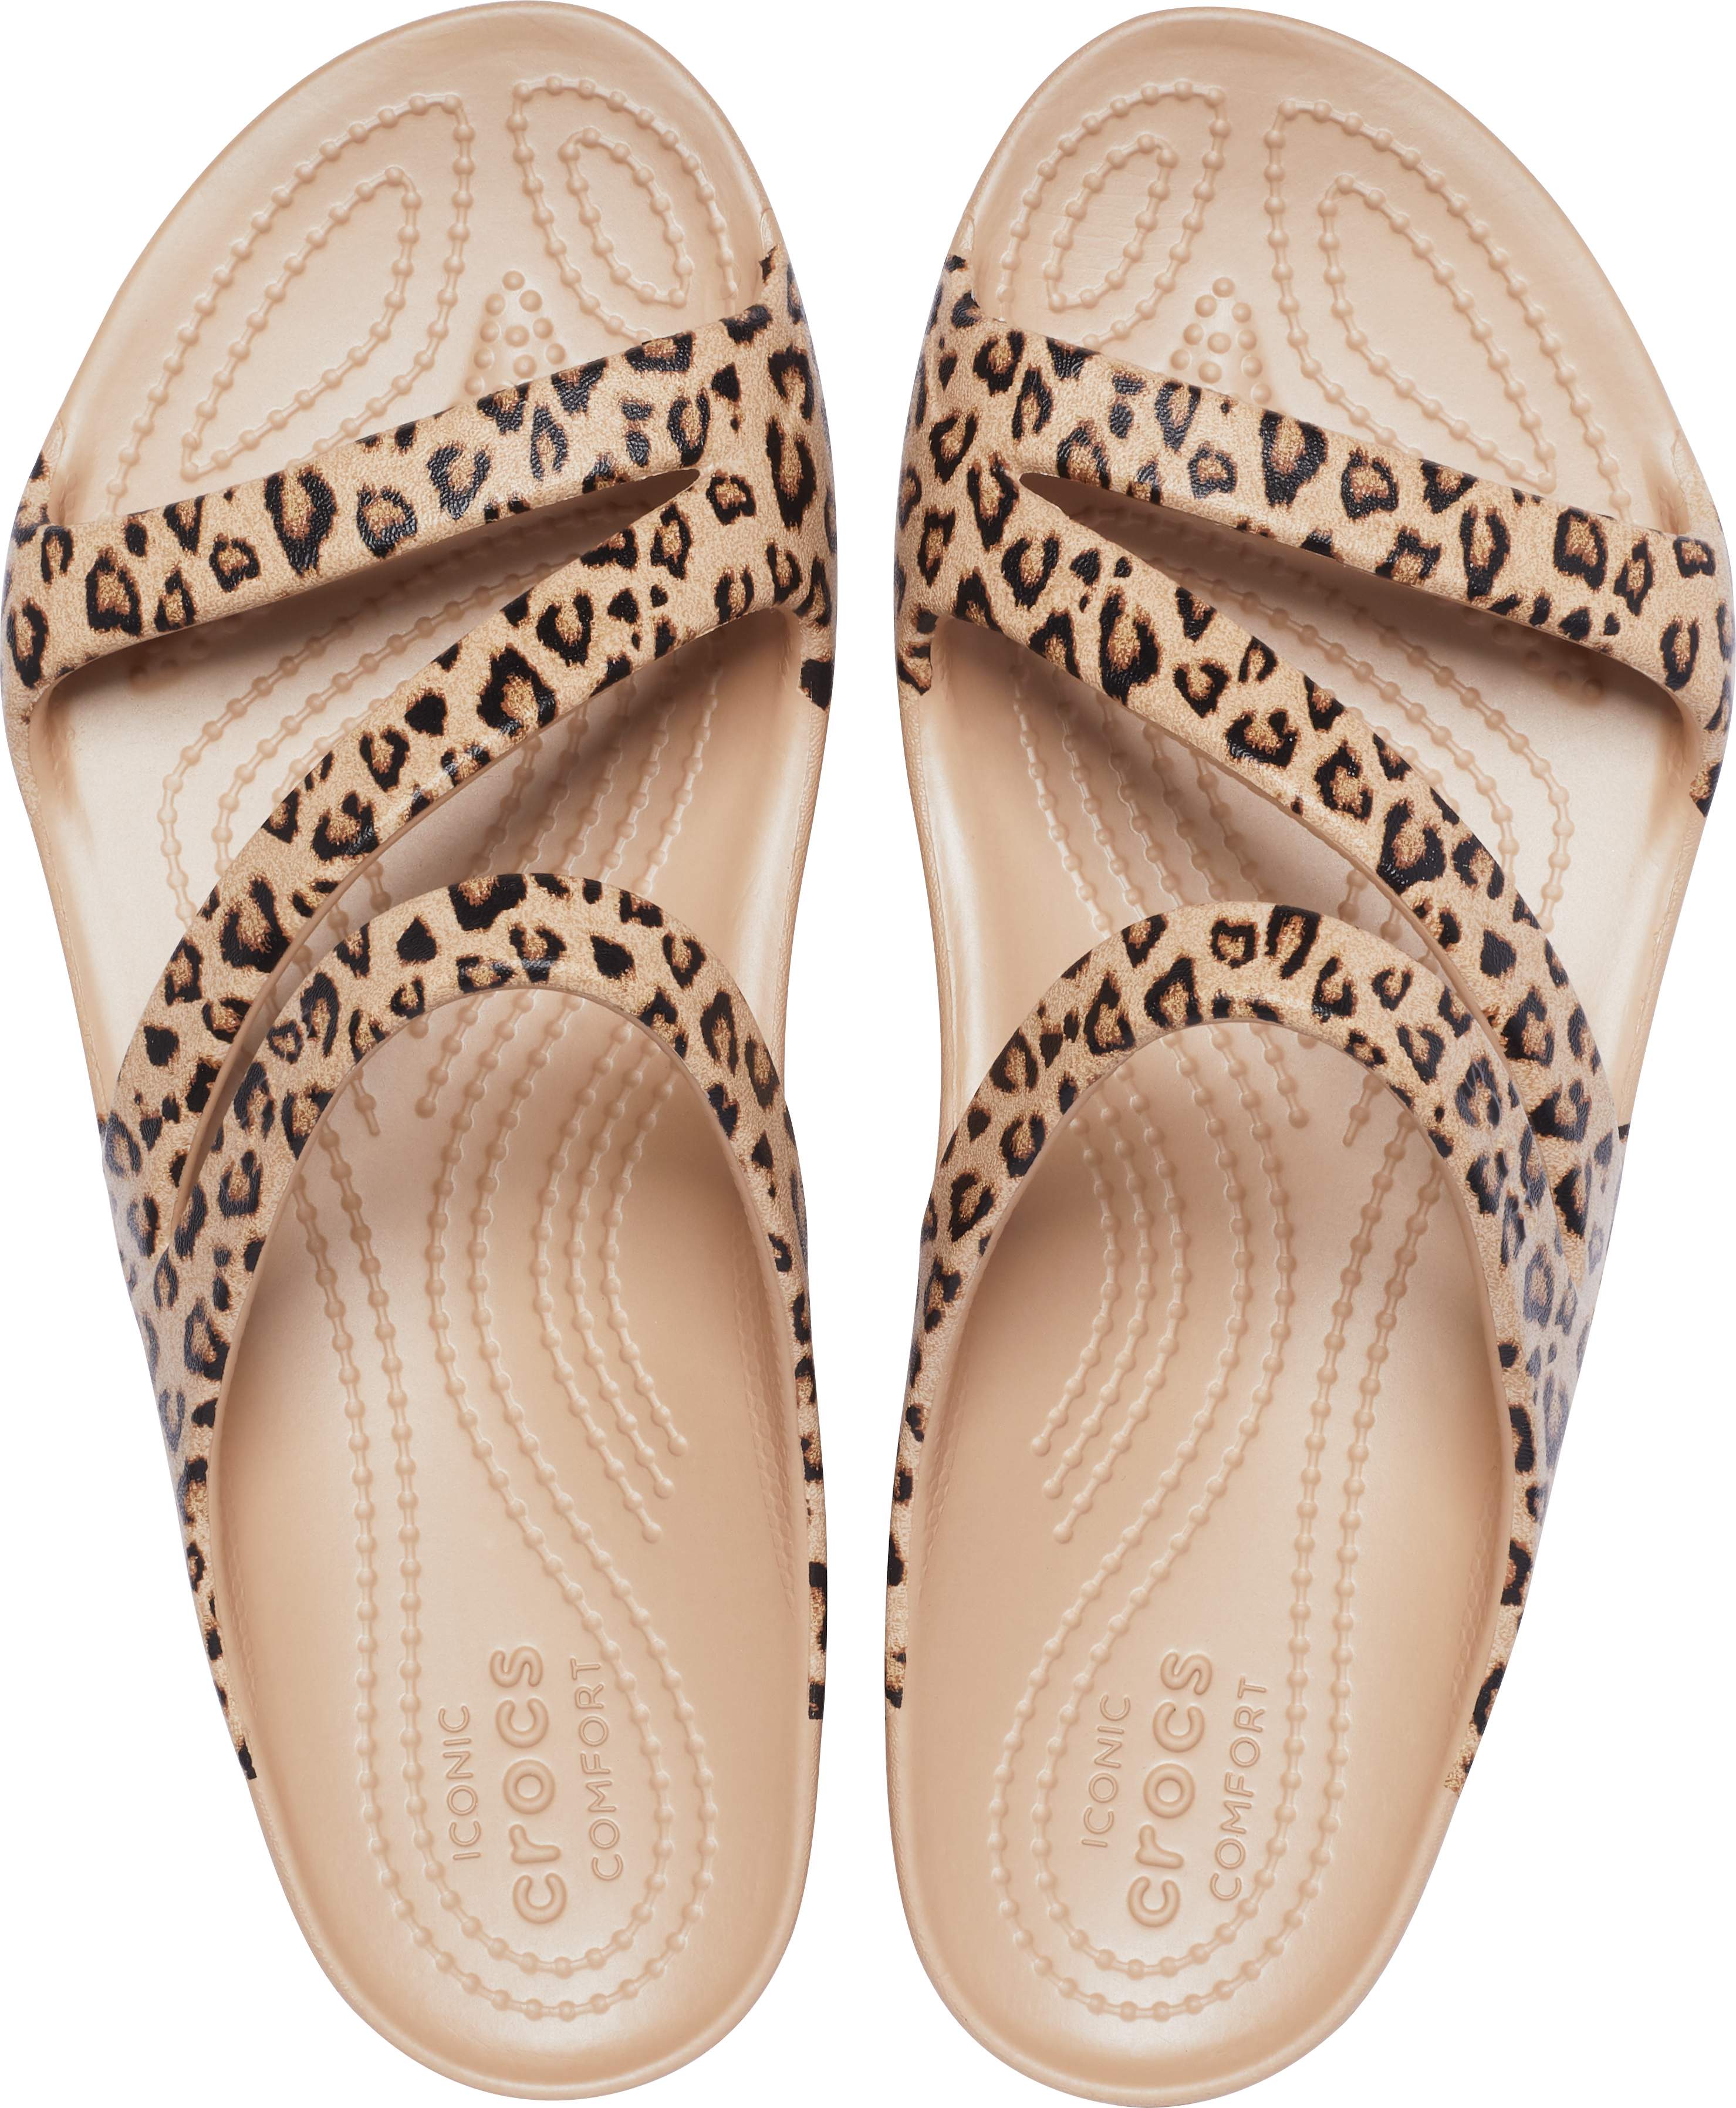 crocs women's kadee ii graphic flip flop